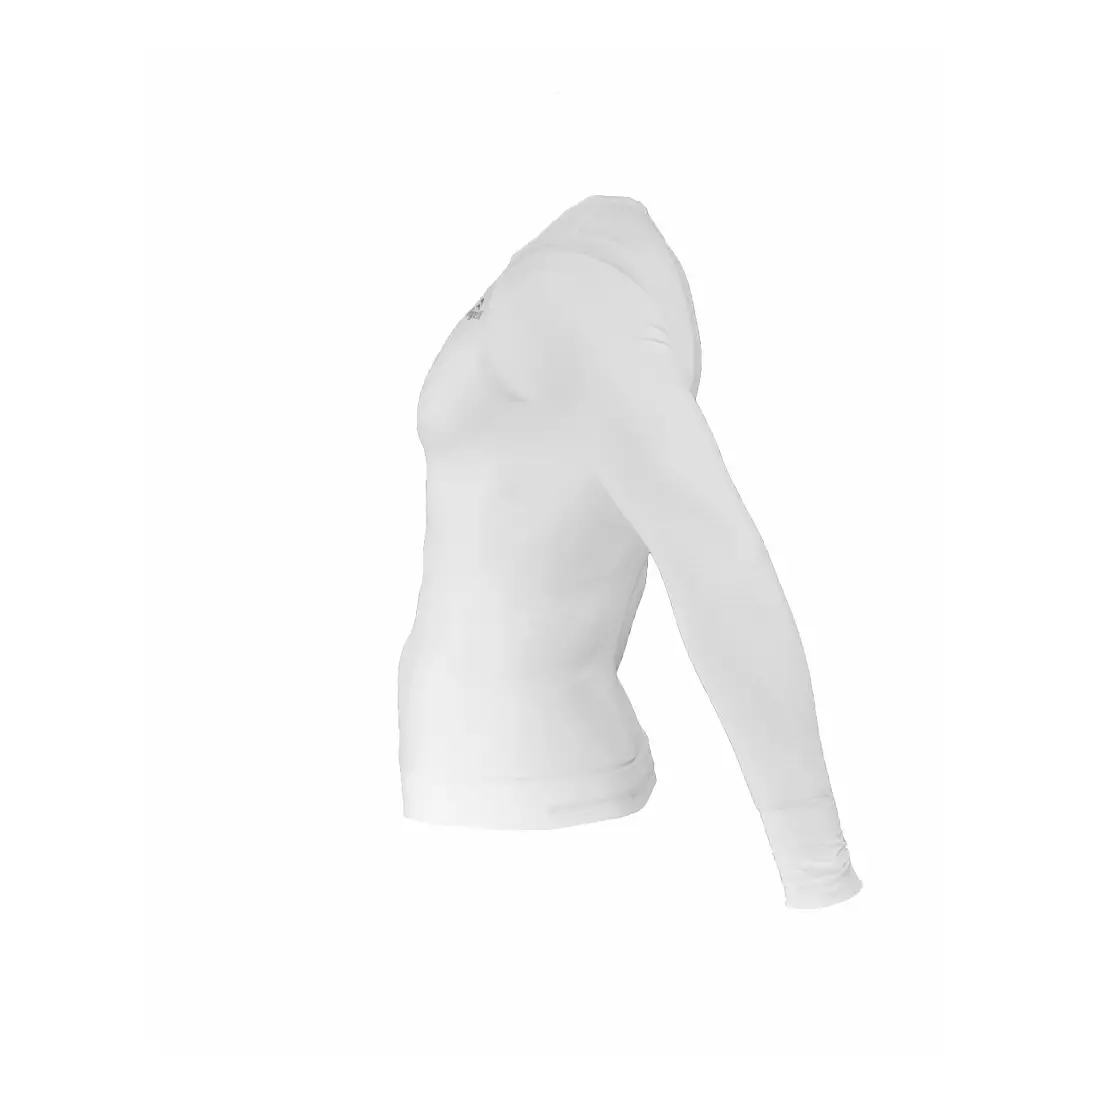 ROGELLI CHASE - 070.005 - termoprádlo - pánské triko s dlouhým rukávem - barva: Bílá